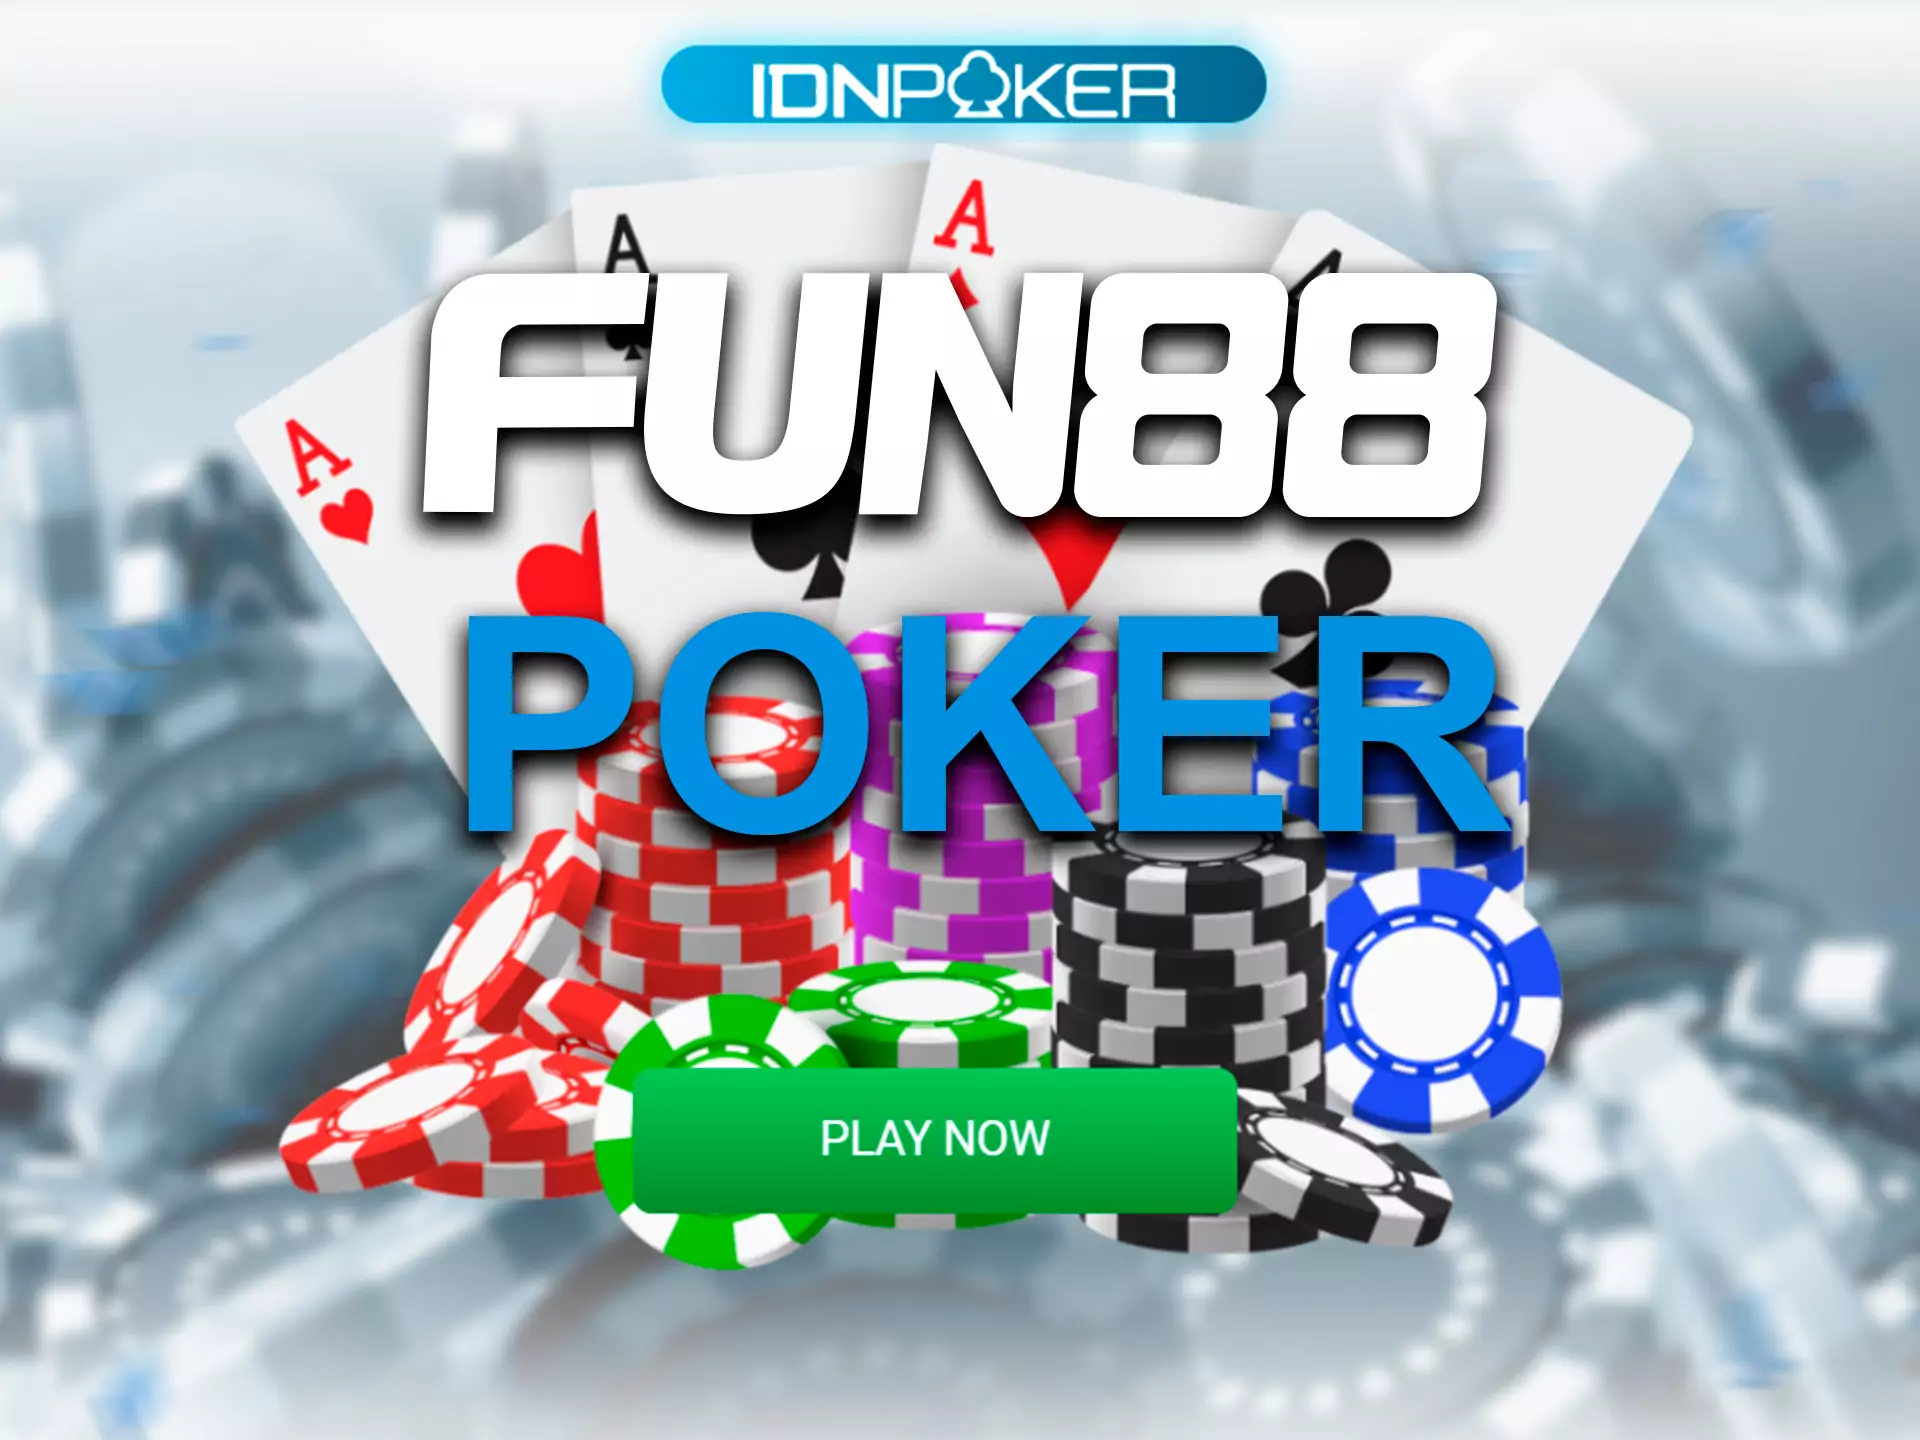 अपना पसंदीदा बोर्ड गेम चुनें और Fun88 पर पोकर खेलें।